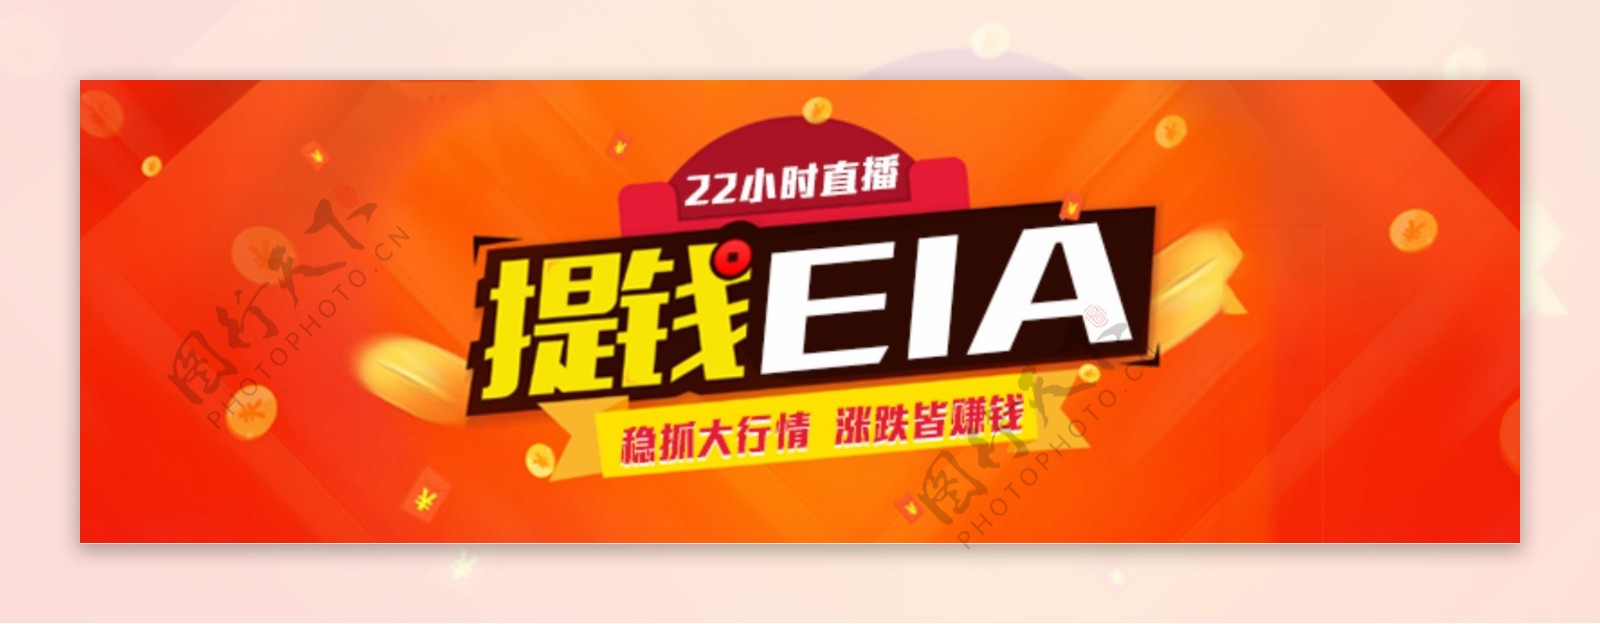 提钱EIA金融banner图片